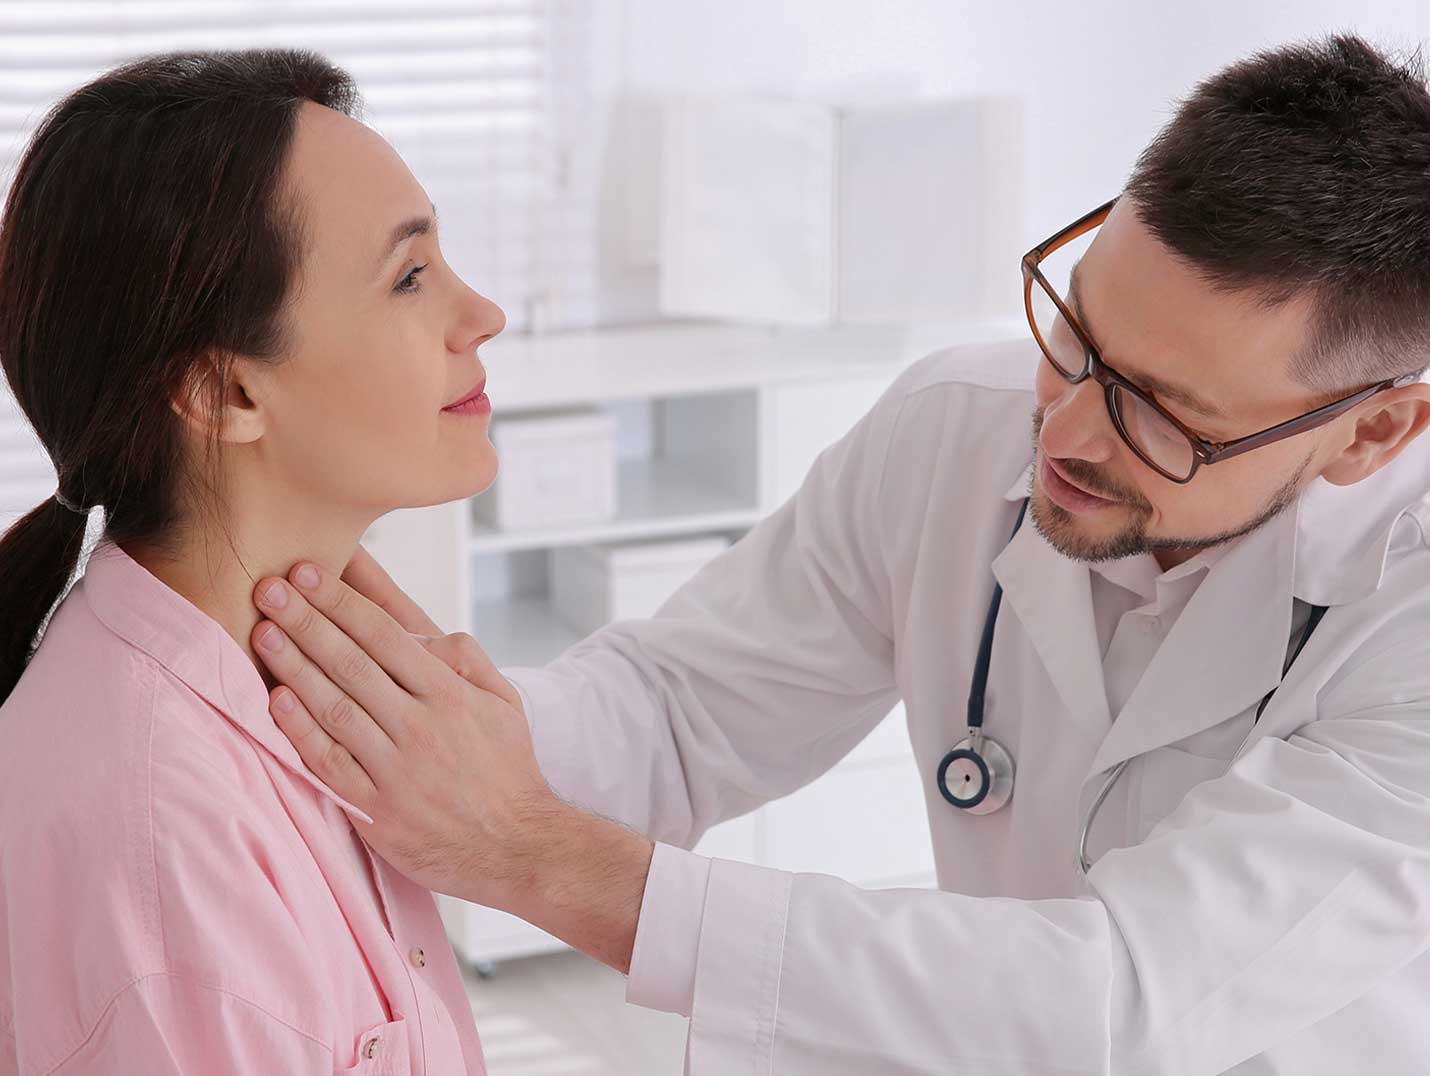 Doctor con bata blanca, lentes y un estetoscopio alrededor del cuello, palpando la garganta de una paciente con blusa rosa